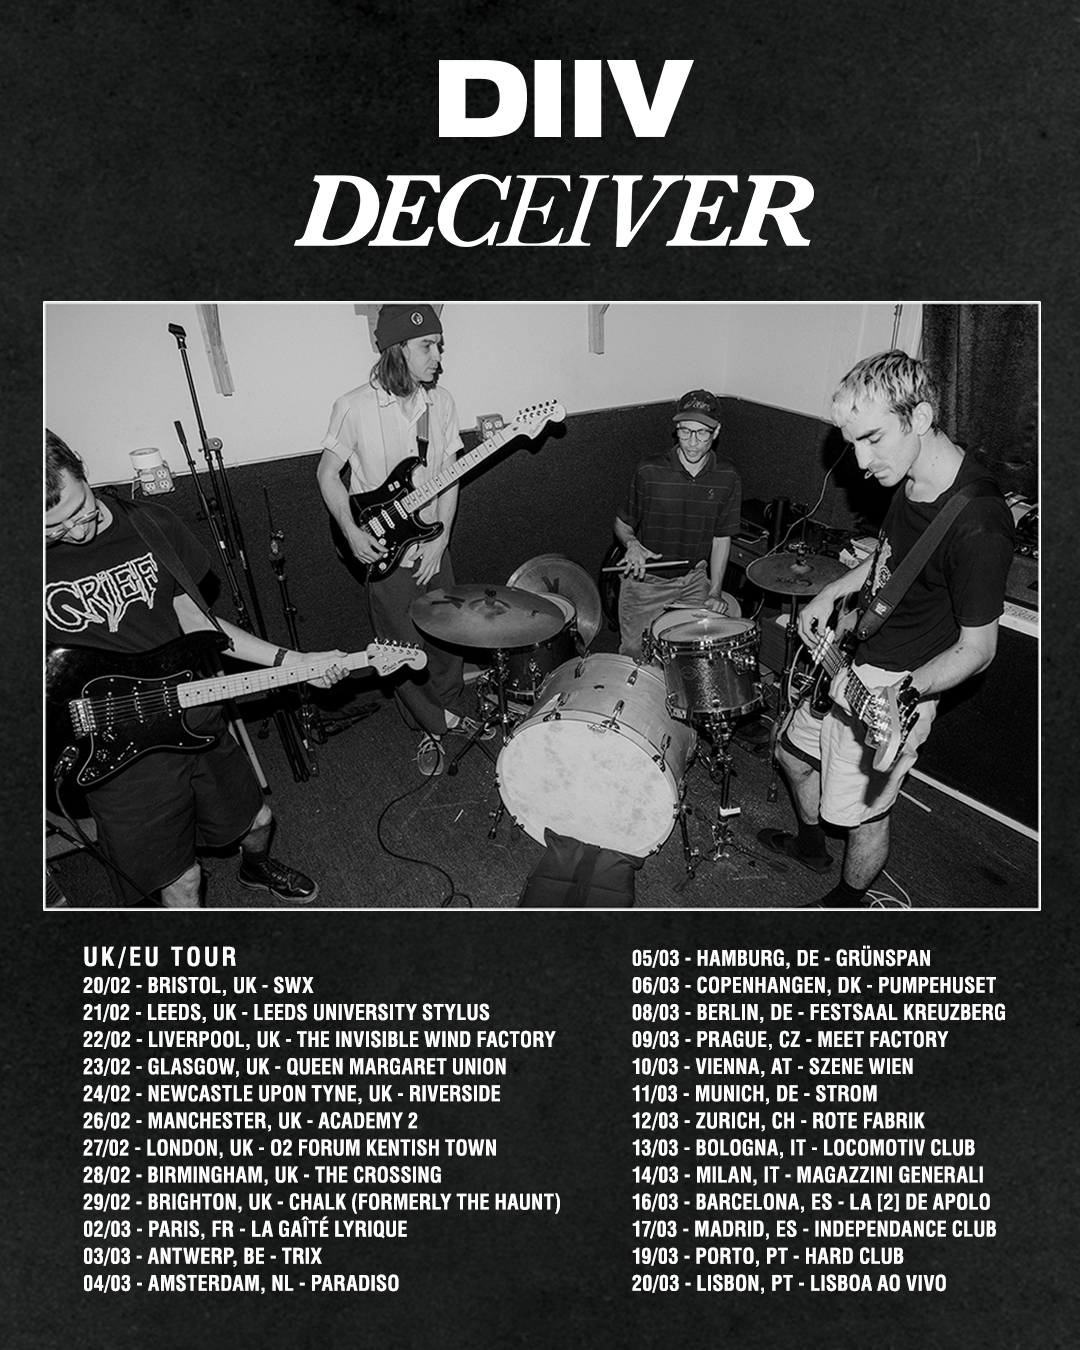 DIIV Announces Tour Dates In Europe